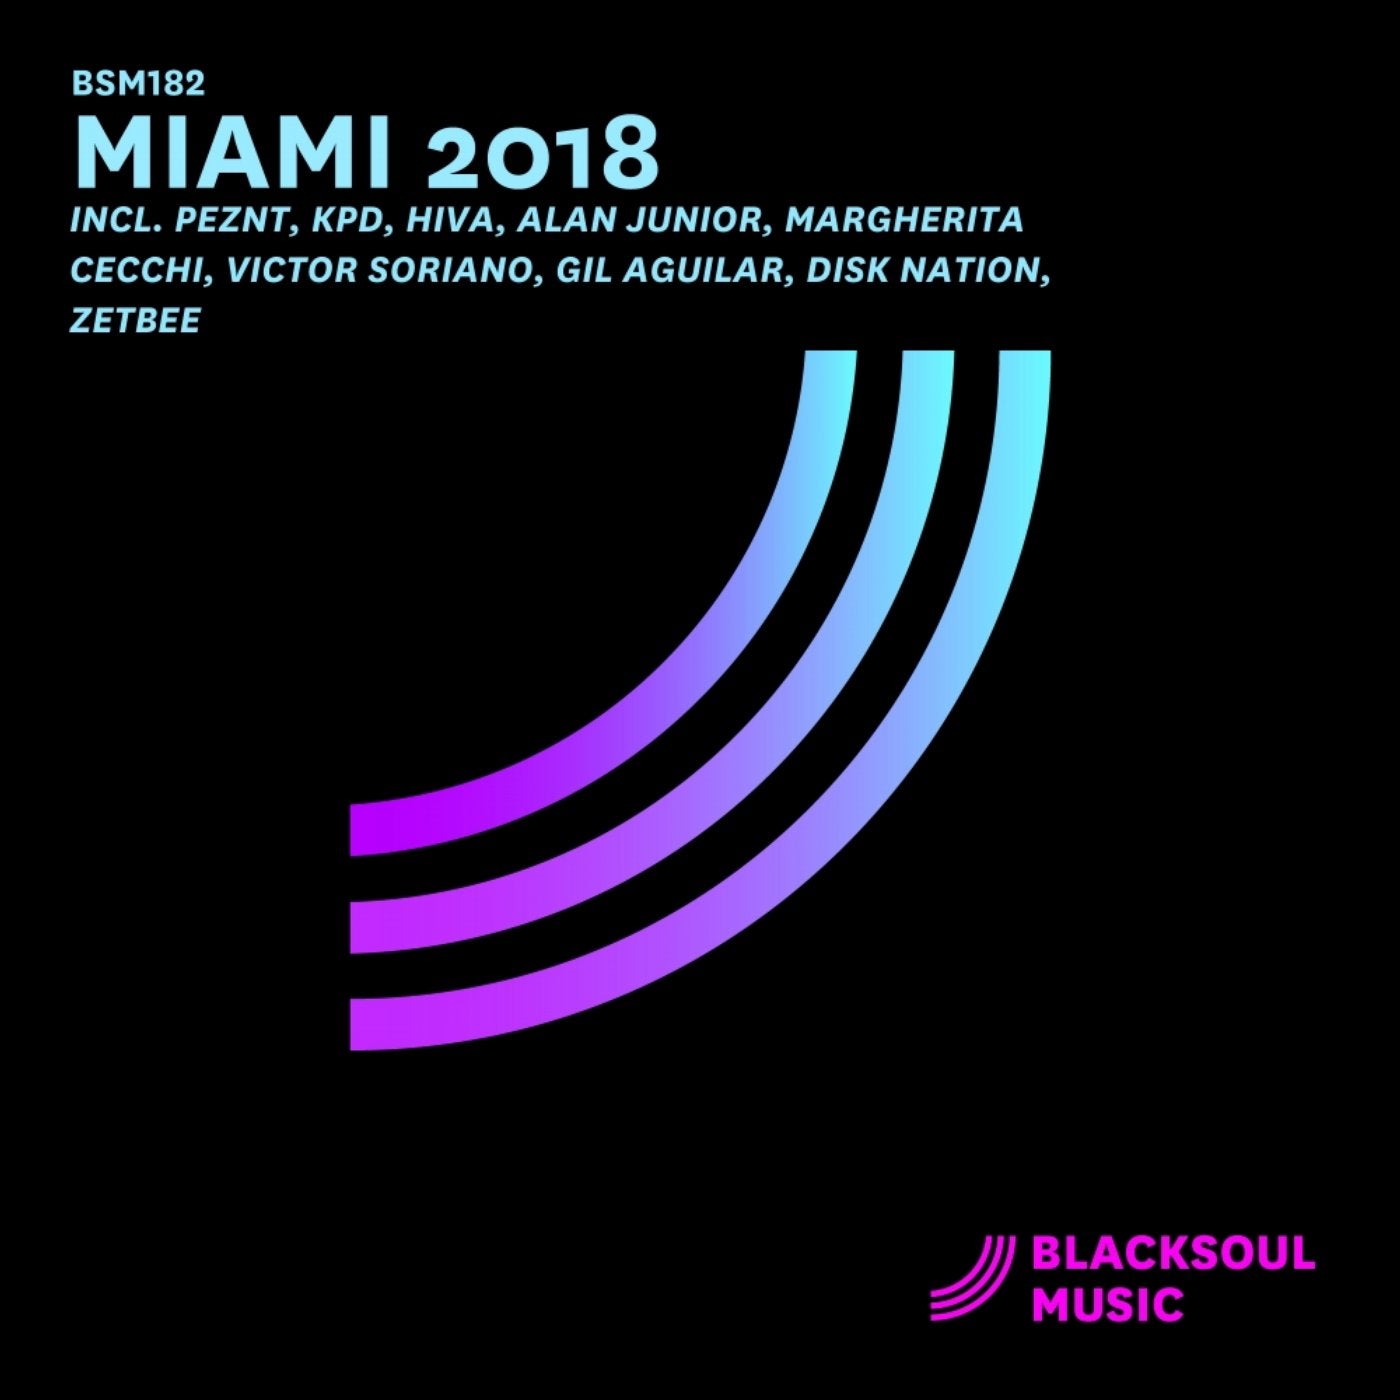 Miami 2018